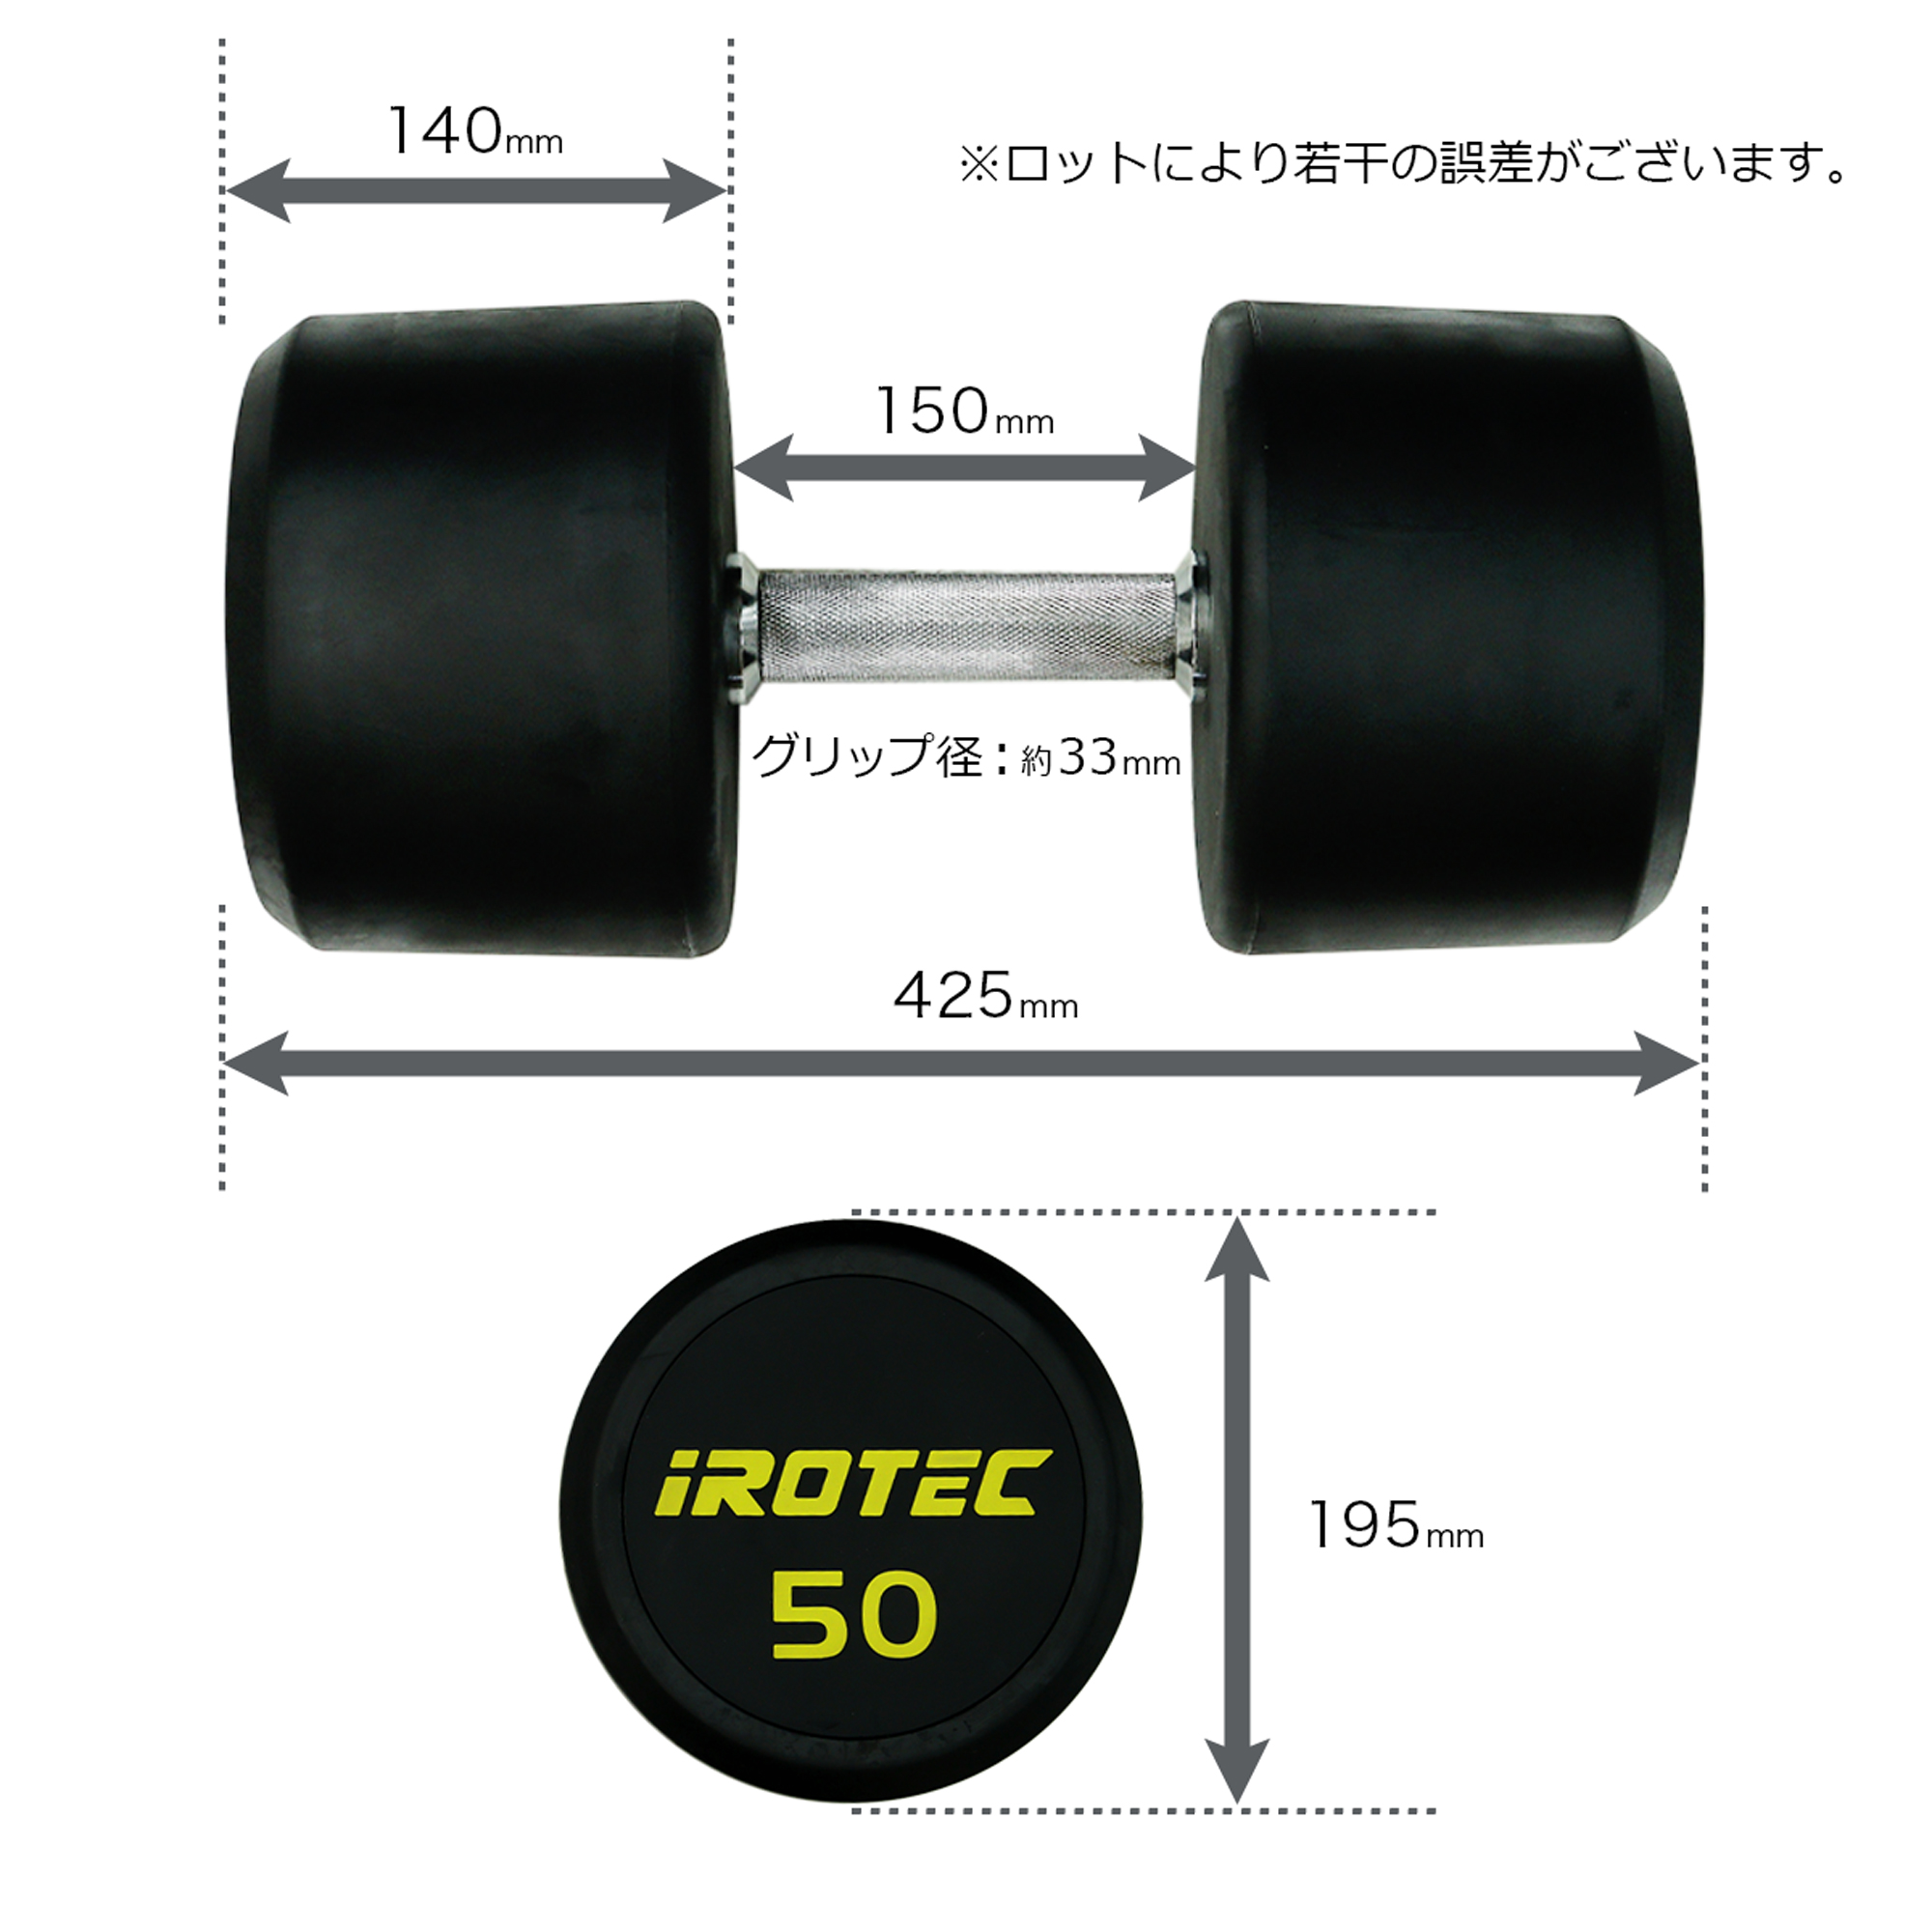 IROTEC(アイロテック) ジムダンベル 50KG / ダンベル スクワット 